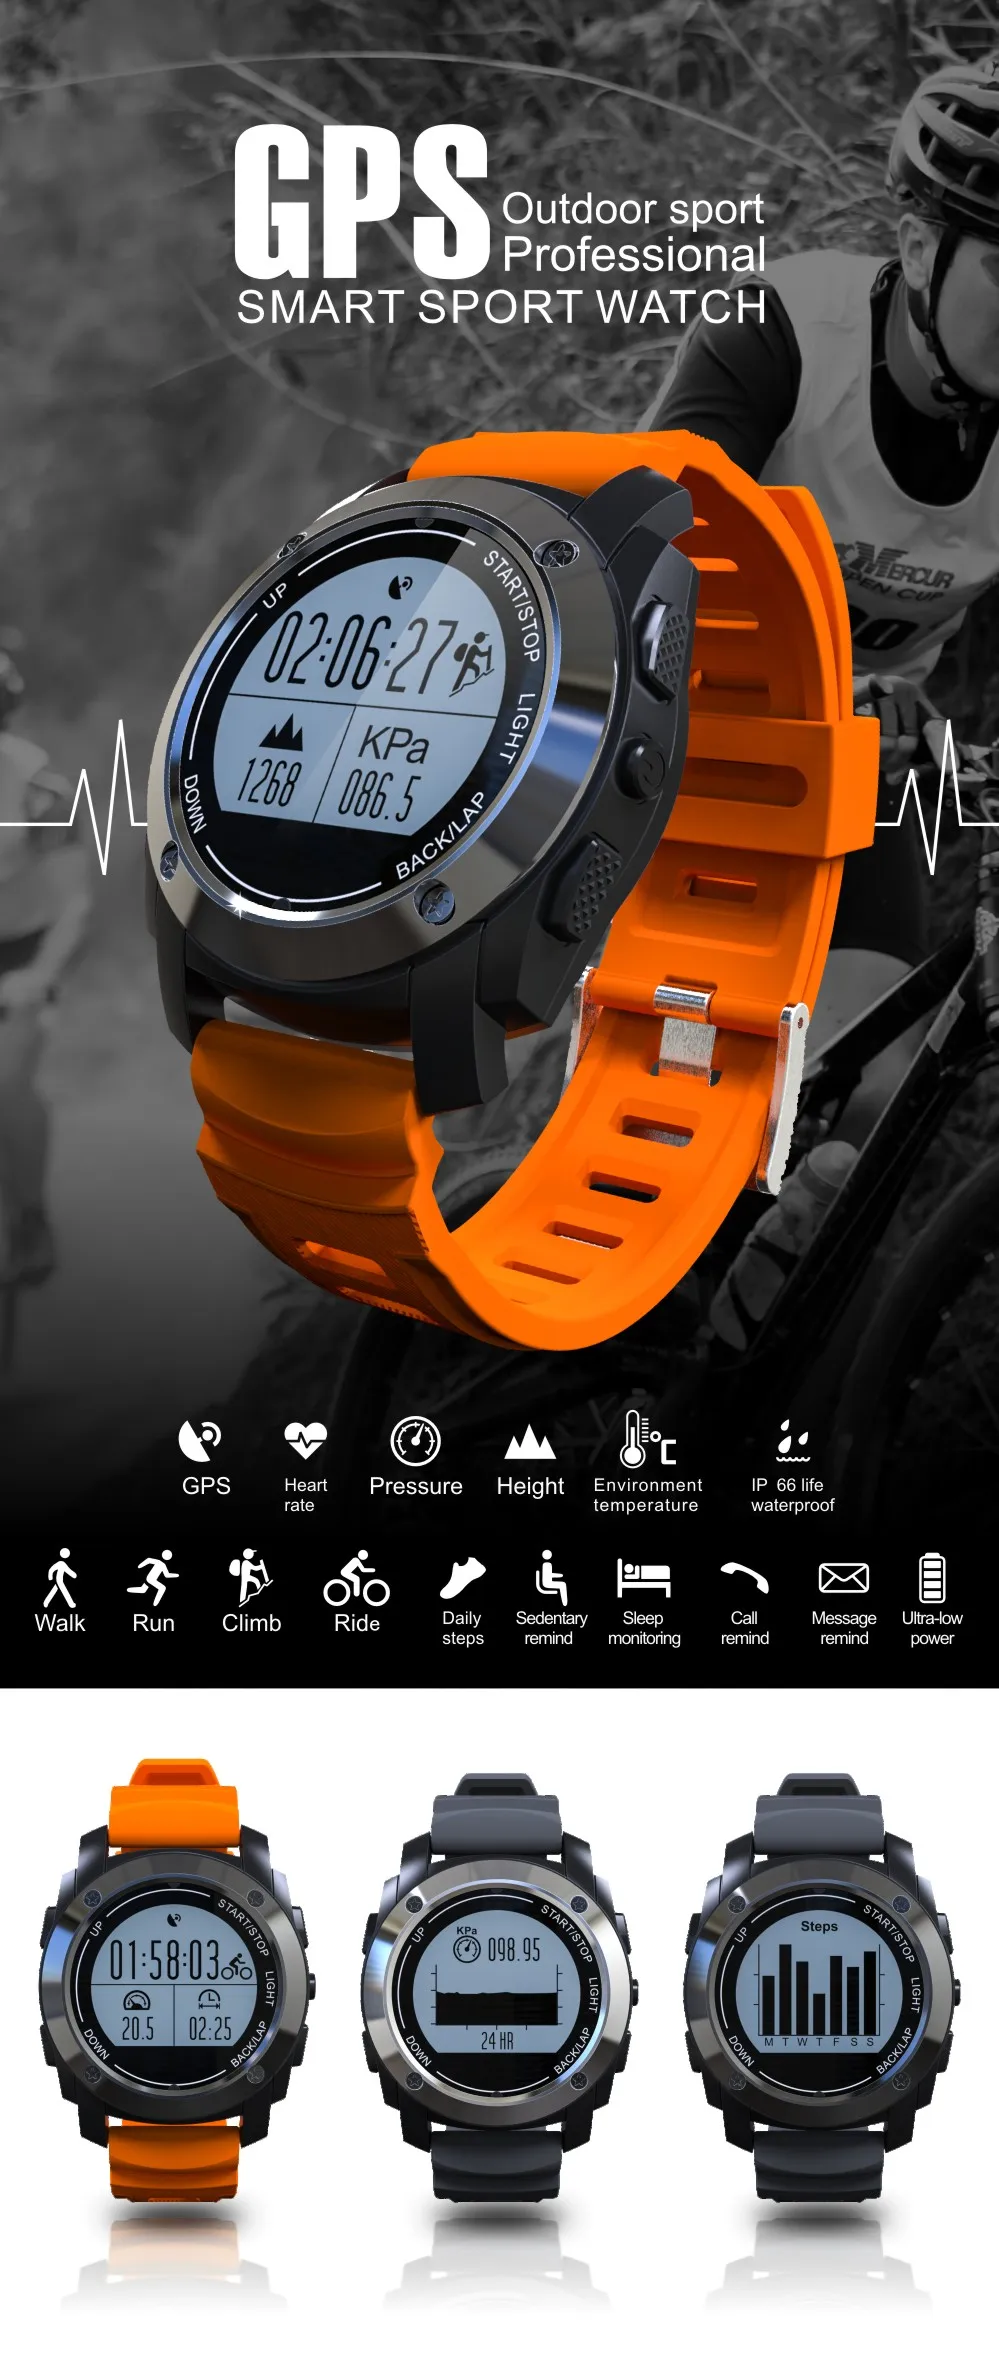 Smartch gps спортивные Смарт часы S928 Bluetooth часы монитор сердечного ритма шагомер Спидометр давление температура водонепроницаемый